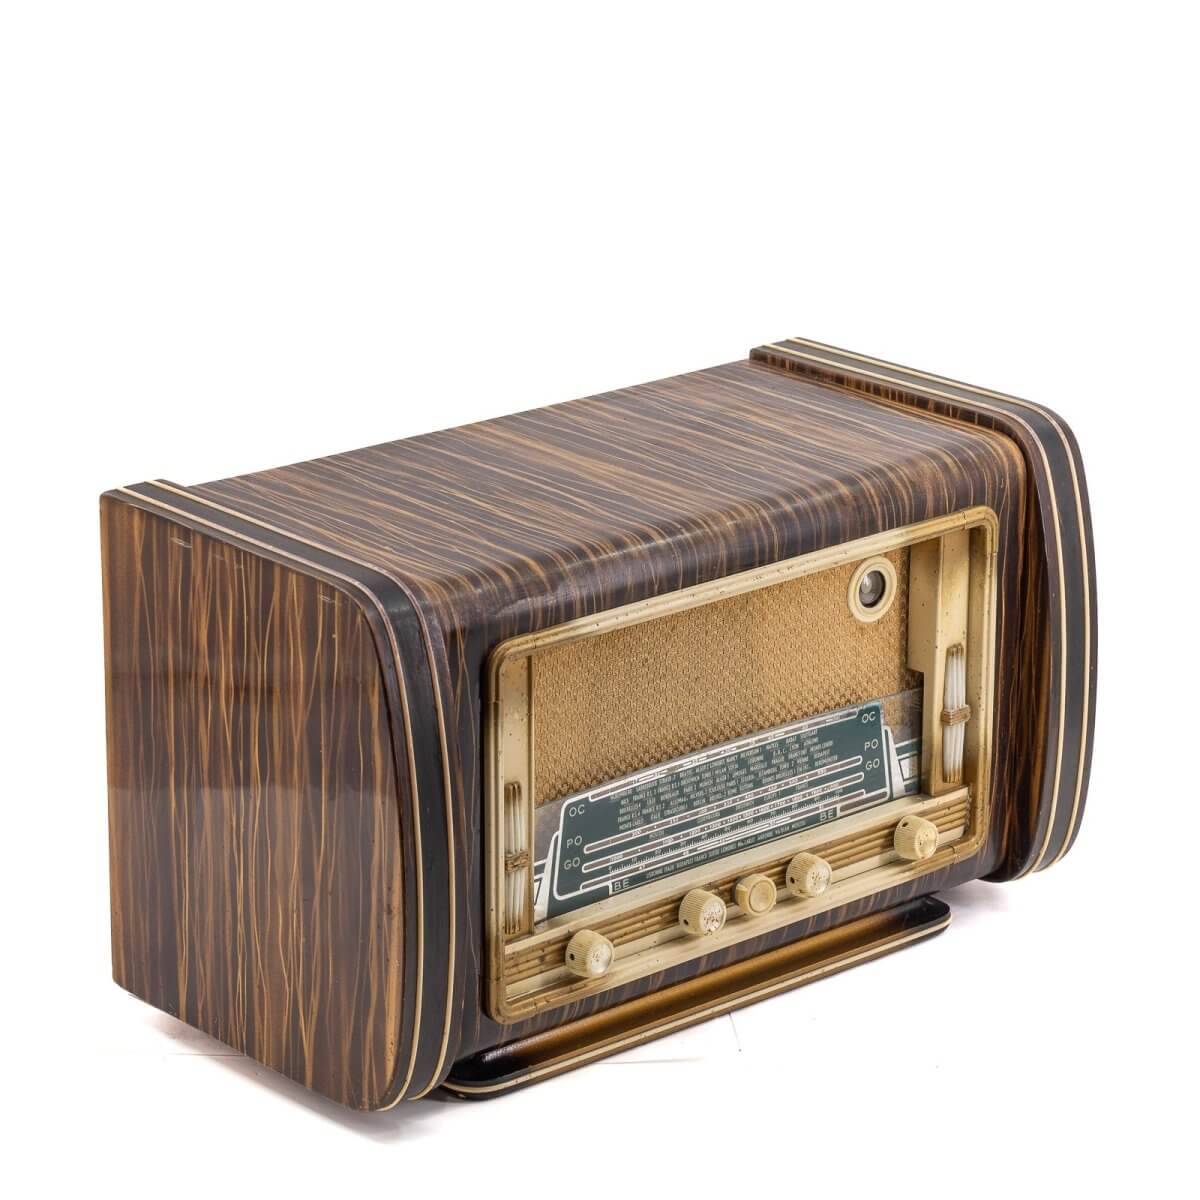 Radio Bluetooth Artisanale Vintage 50’S-A.bsolument-enceintes-et-radios-vintage-bluetooth